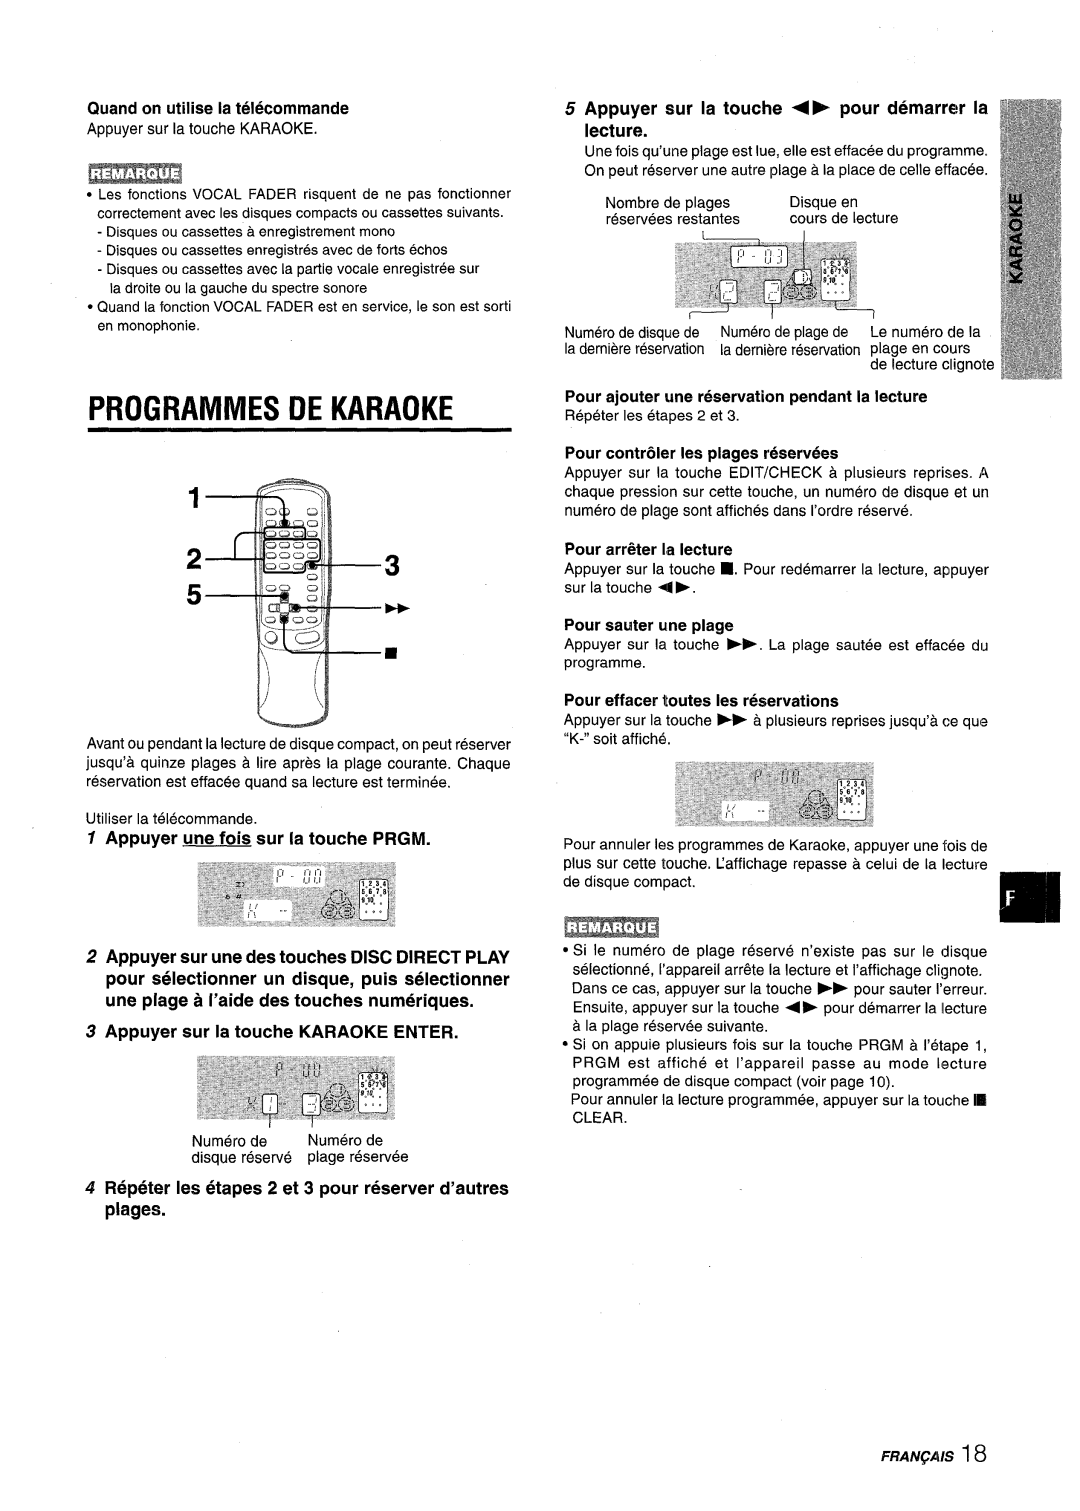 Aiwa NSX-V9000 manual Pfiogrammes De Karaoke, Quand on utilise la telecommande, Appuyer une fois sur la touche PRGM 